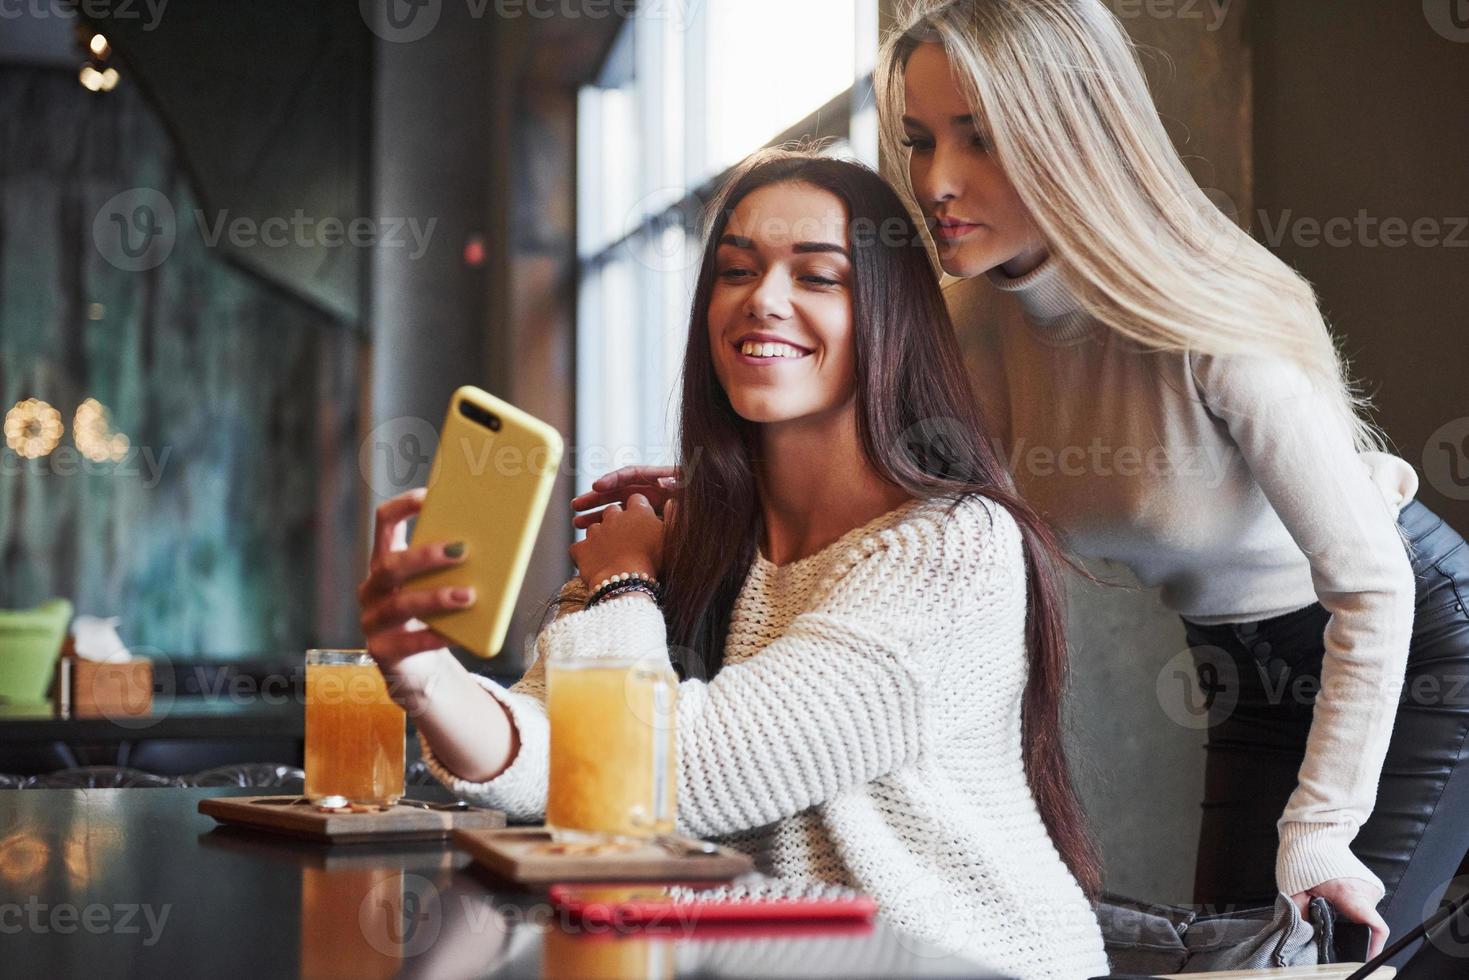 laten we een foto maken. in het restaurant. twee vriendinnen zitten binnen met gele drank en gebruiken de smartphone